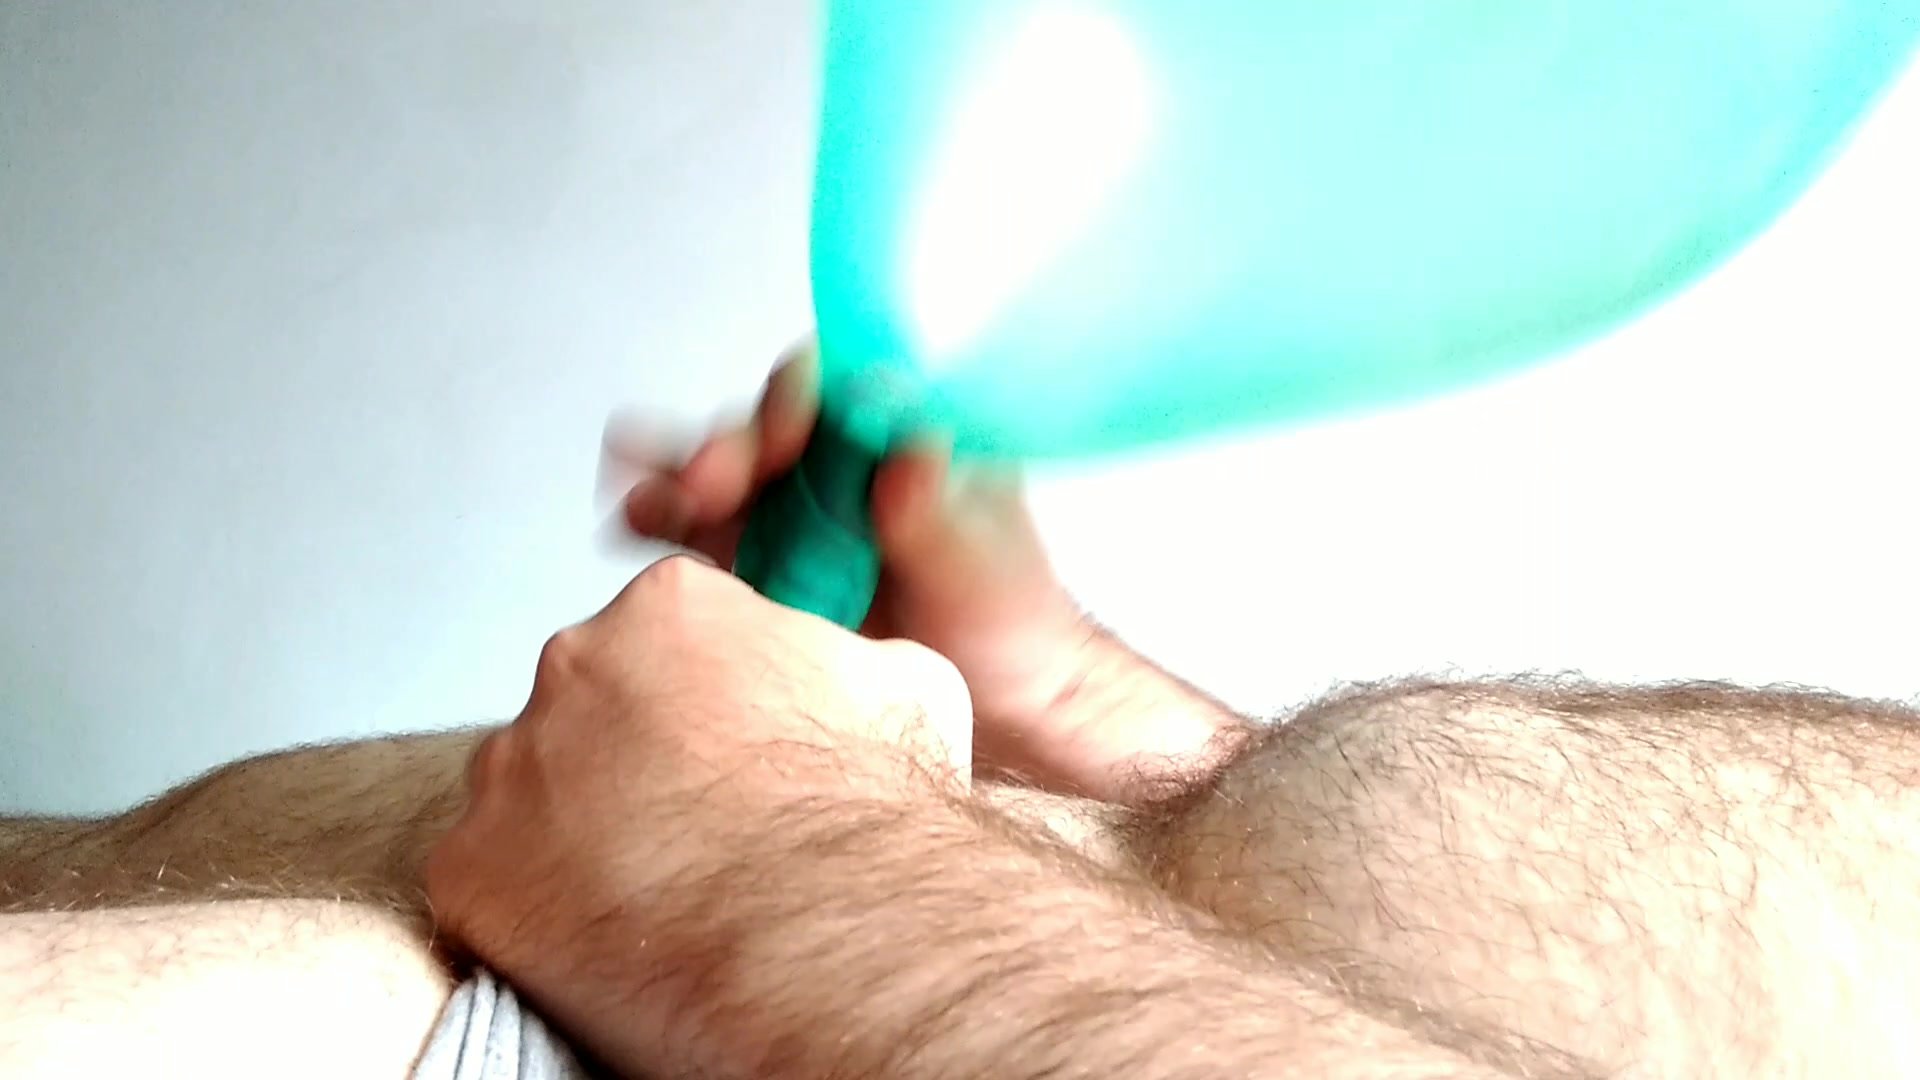 Cumming inside a small balloon